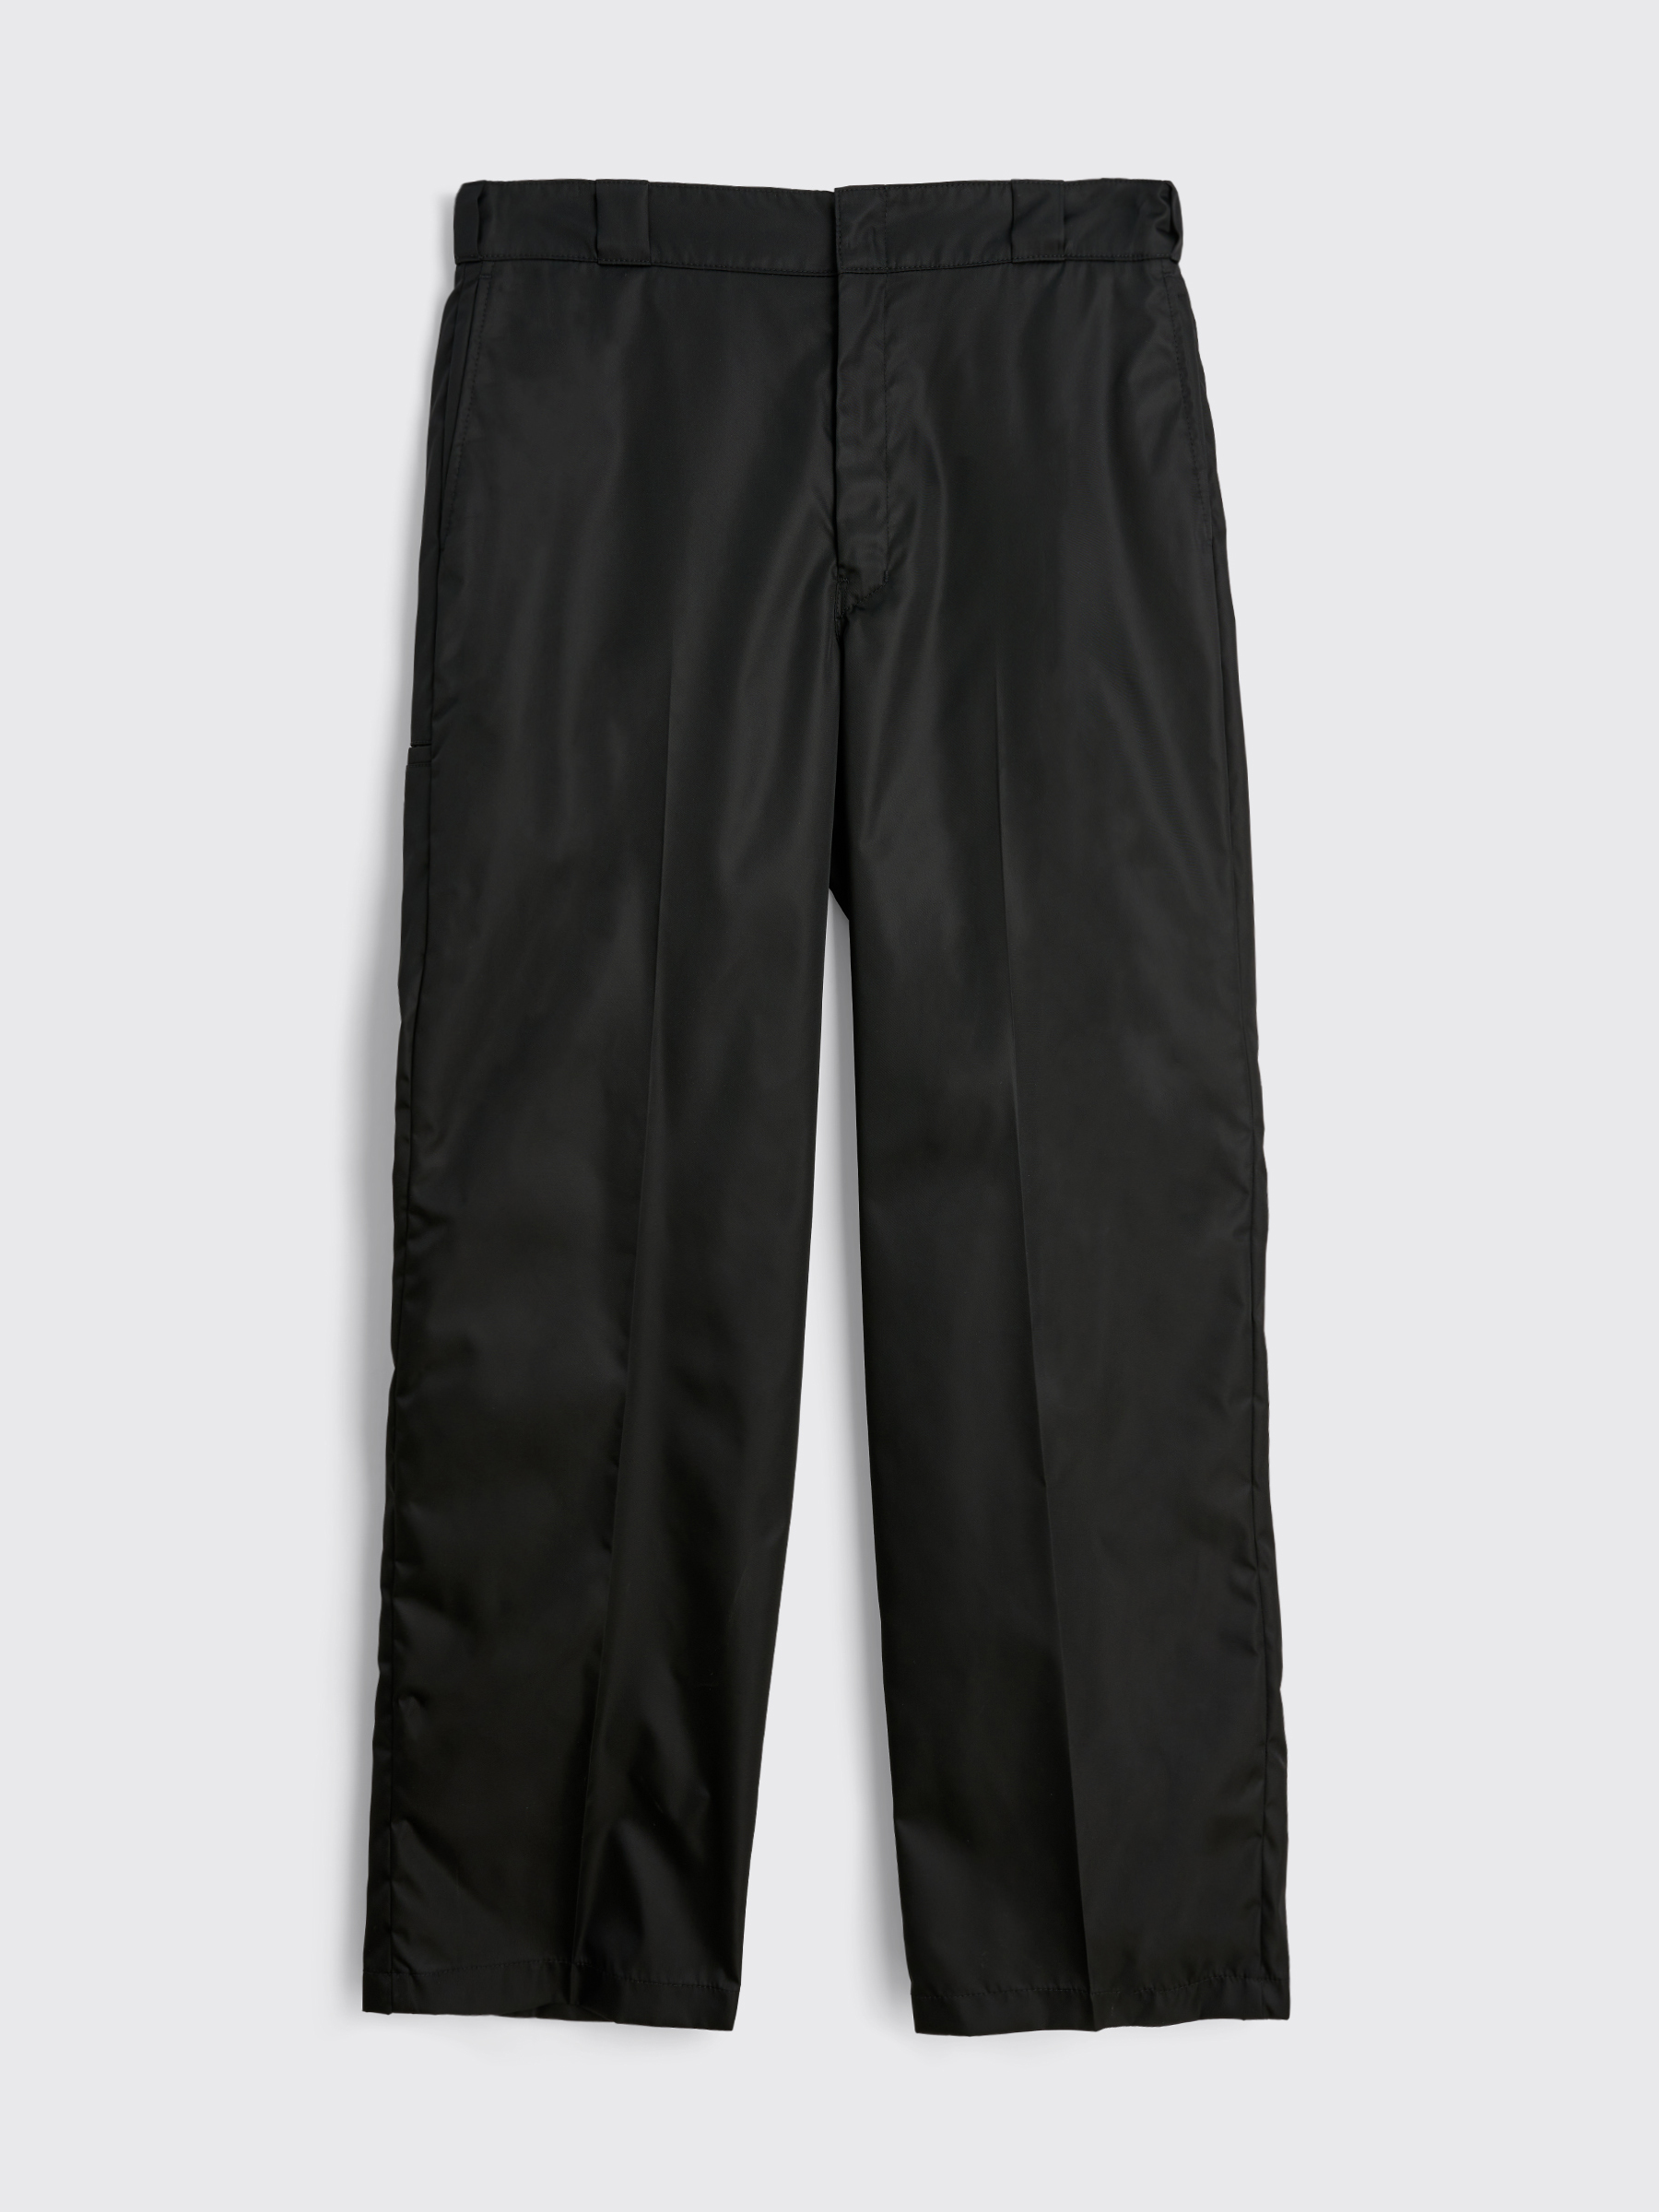 Très Bien - Prada Re-Nylon Pants Black